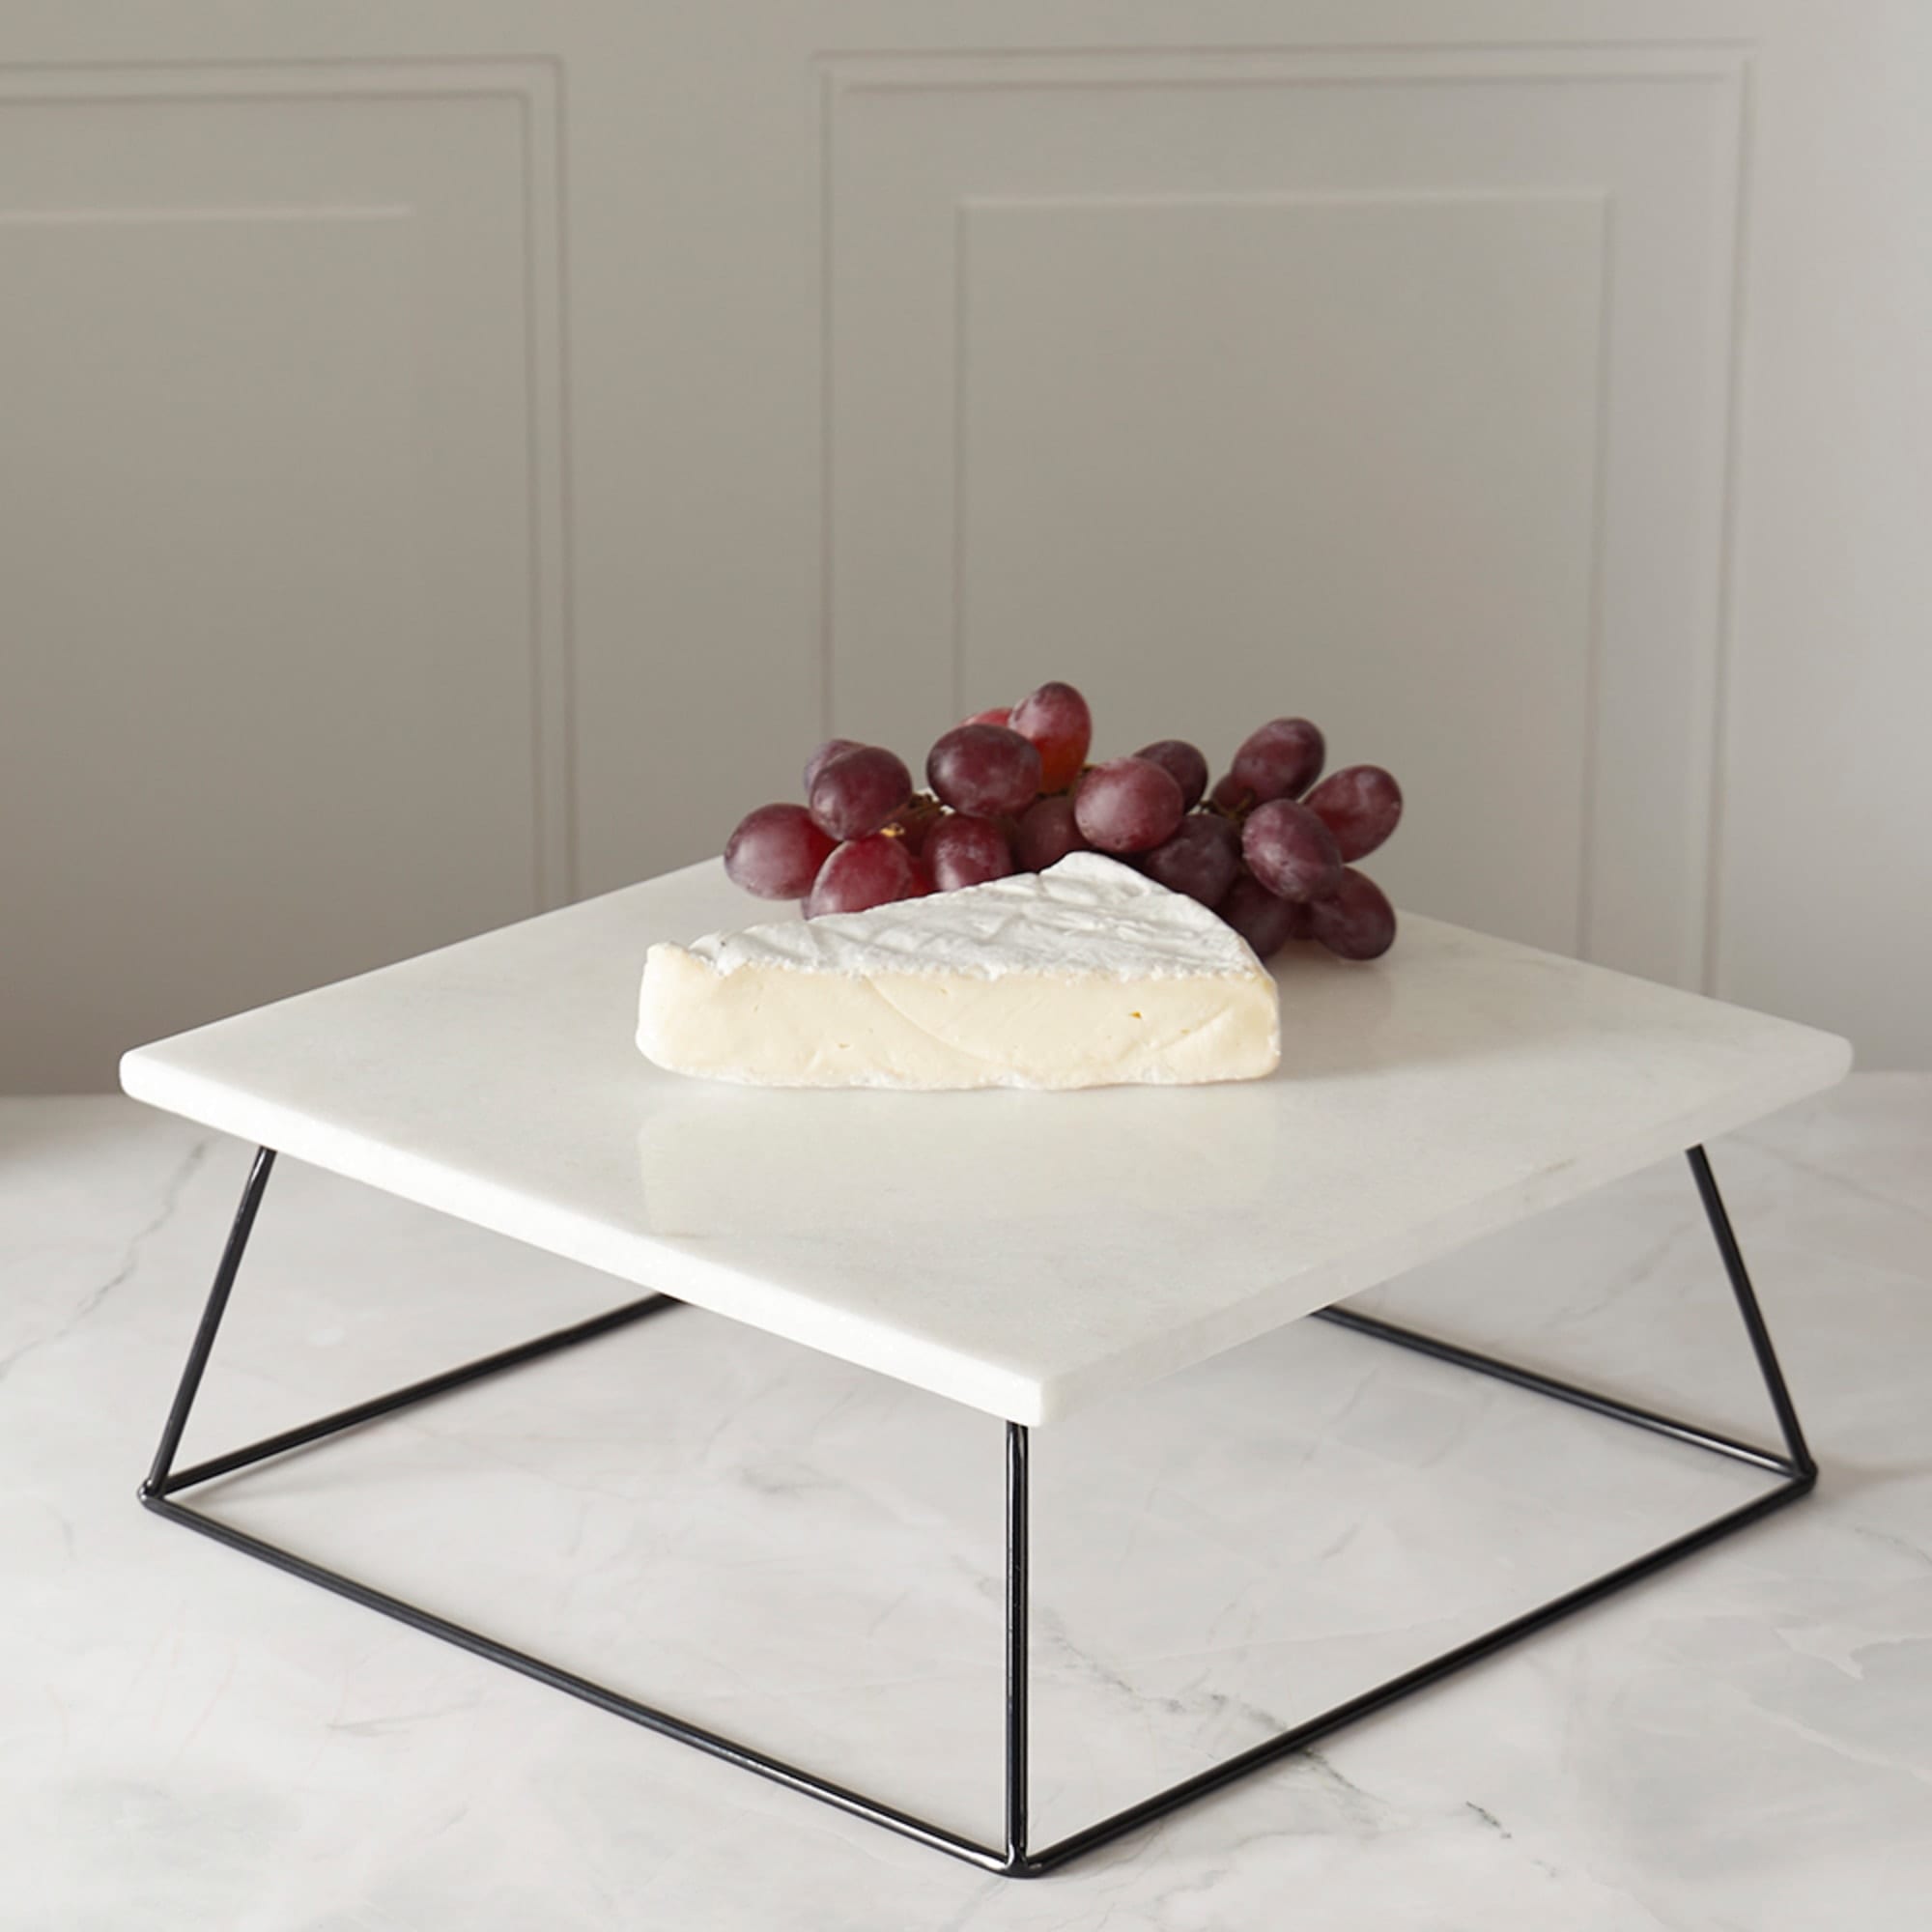 Sophia Grace Square Marble Table Riser, White/Black $15.00 EACH, CASE PACK OF 4